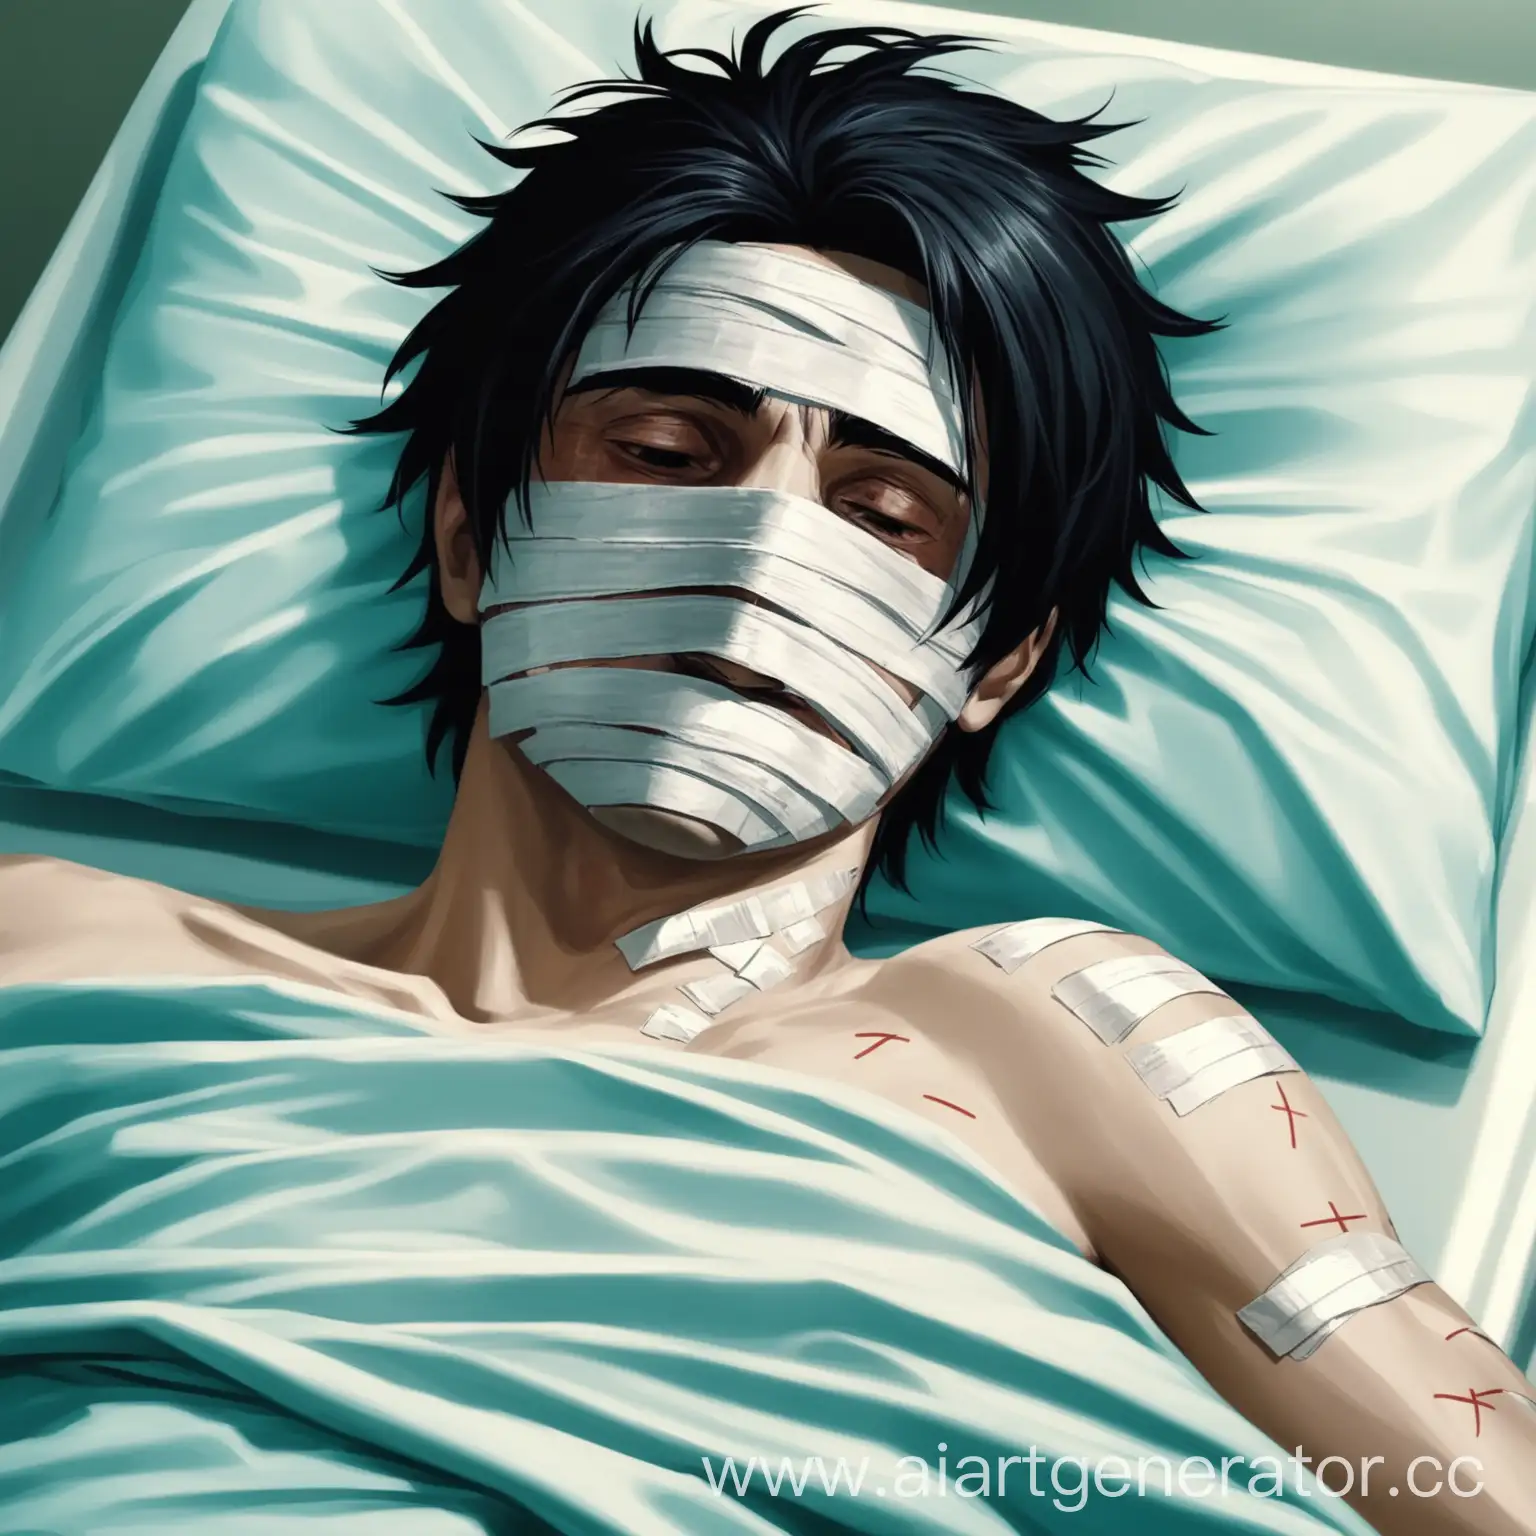 Парень с черными волосами лежит в больнице с перевязанным лицом рисунок